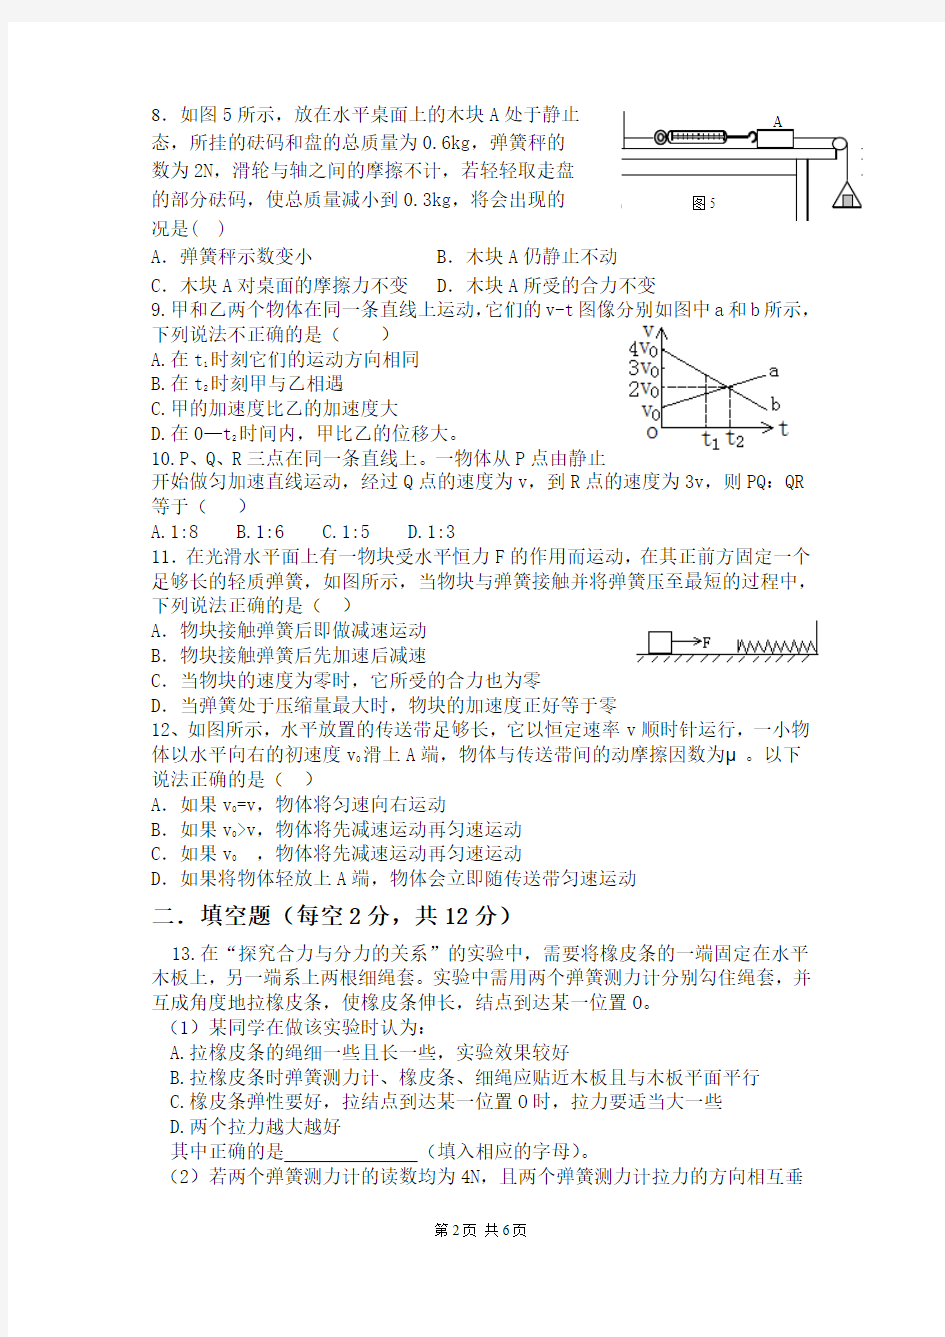 湘潭凤凰中学高一物理竞赛练习题六(未打印)